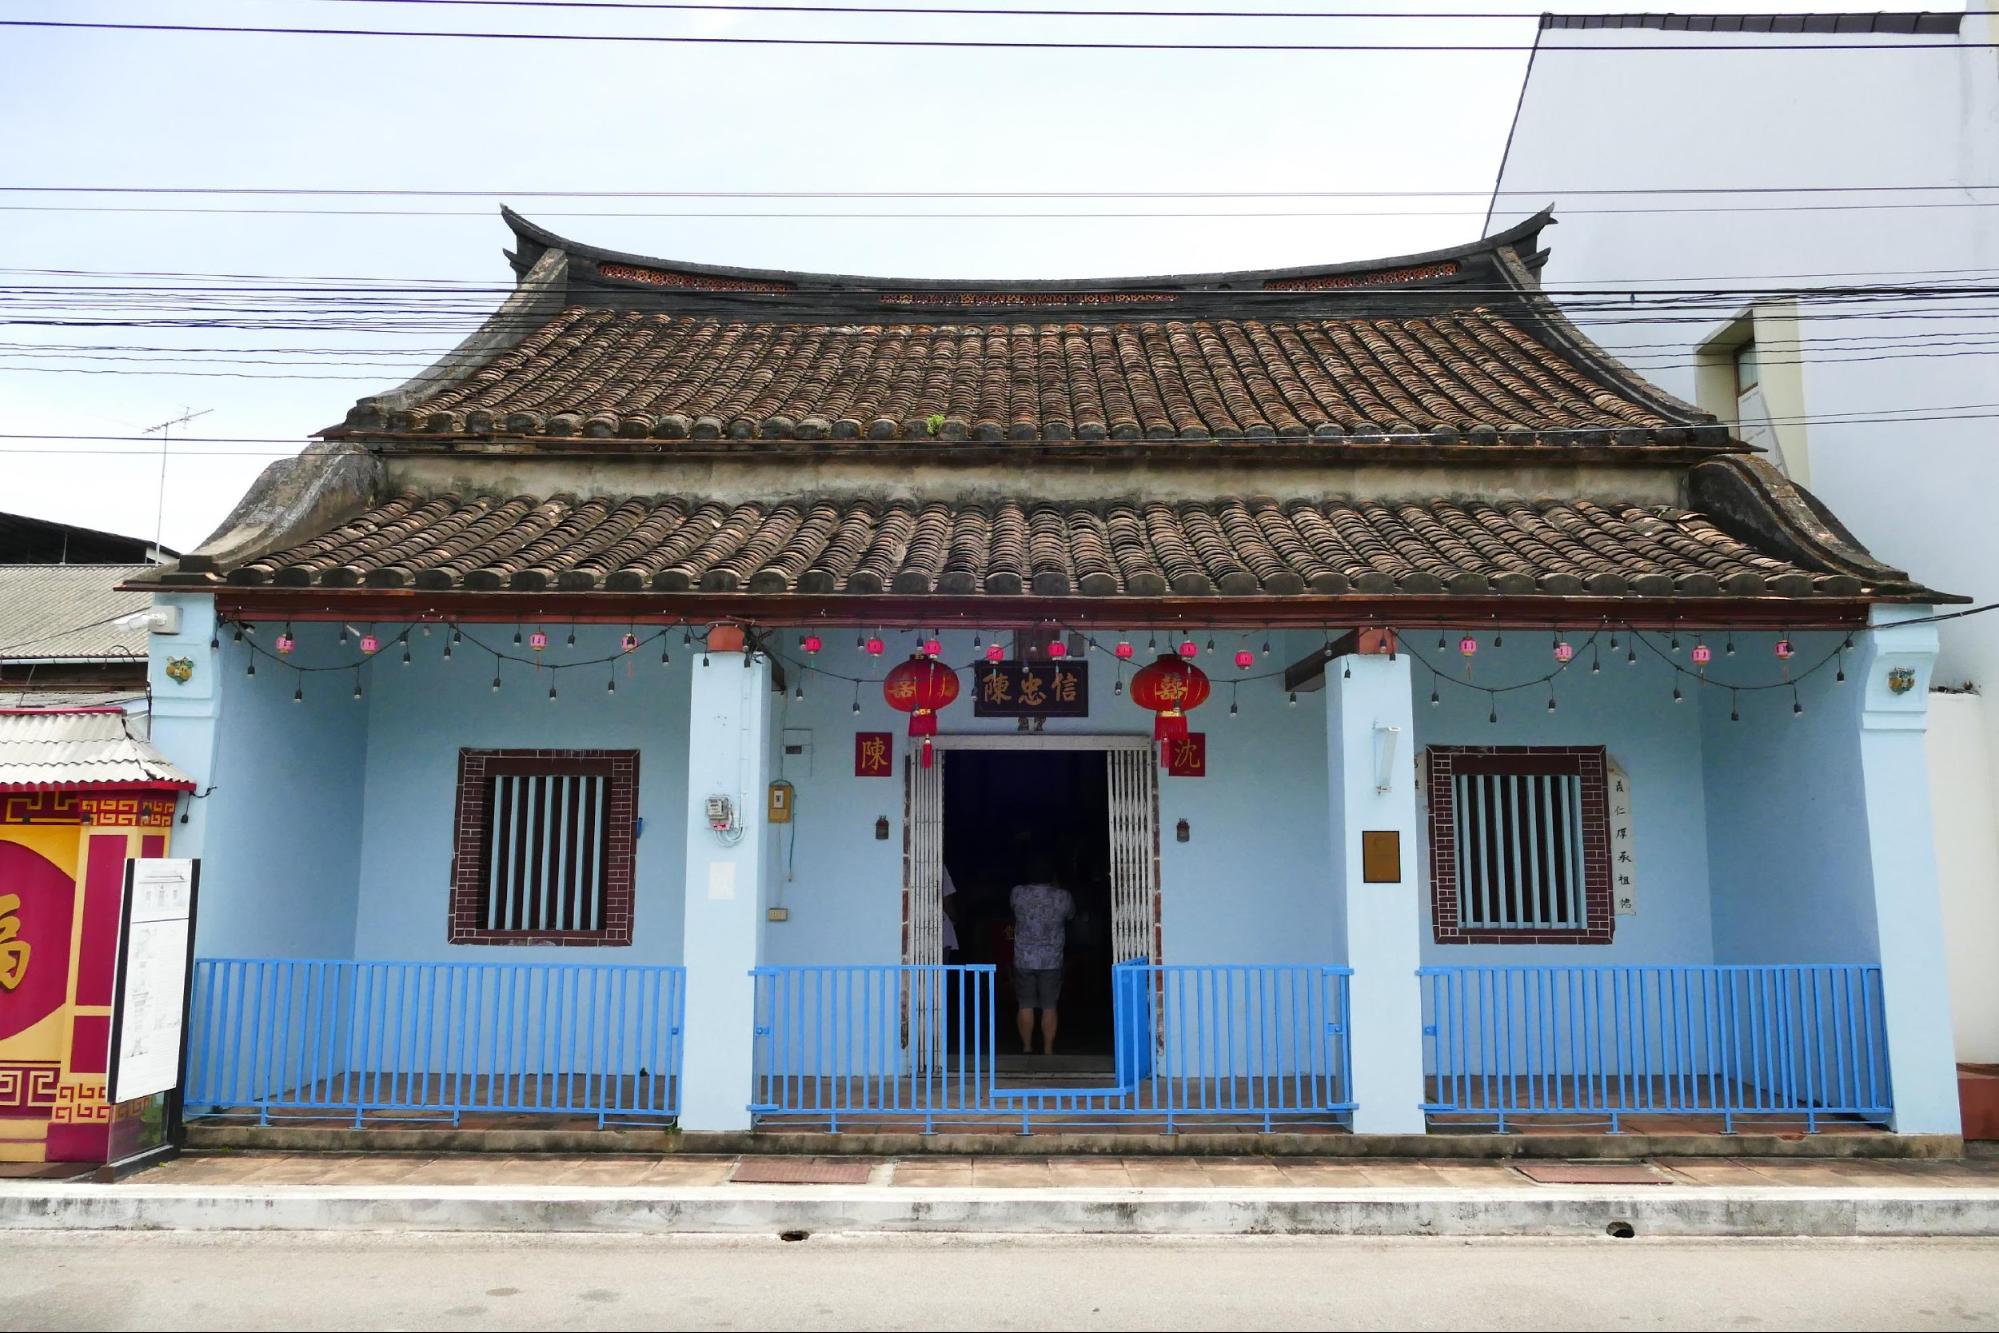 บ้านกงสีของหลวงสำเร็จกิจกรจางวาง (ปุ่ย แซ่ตัน) ซึ่งเป็นชาวจีนฮกเกี้ยนที่เข้ามาในสมัยรัชกาลที่ 3 ได้อาสาปราบกบฏเมืองตานี เมืองไทรบุรี จึงได้รับความดีความชอบให้เป็นเจ้าภาษีนายอากร